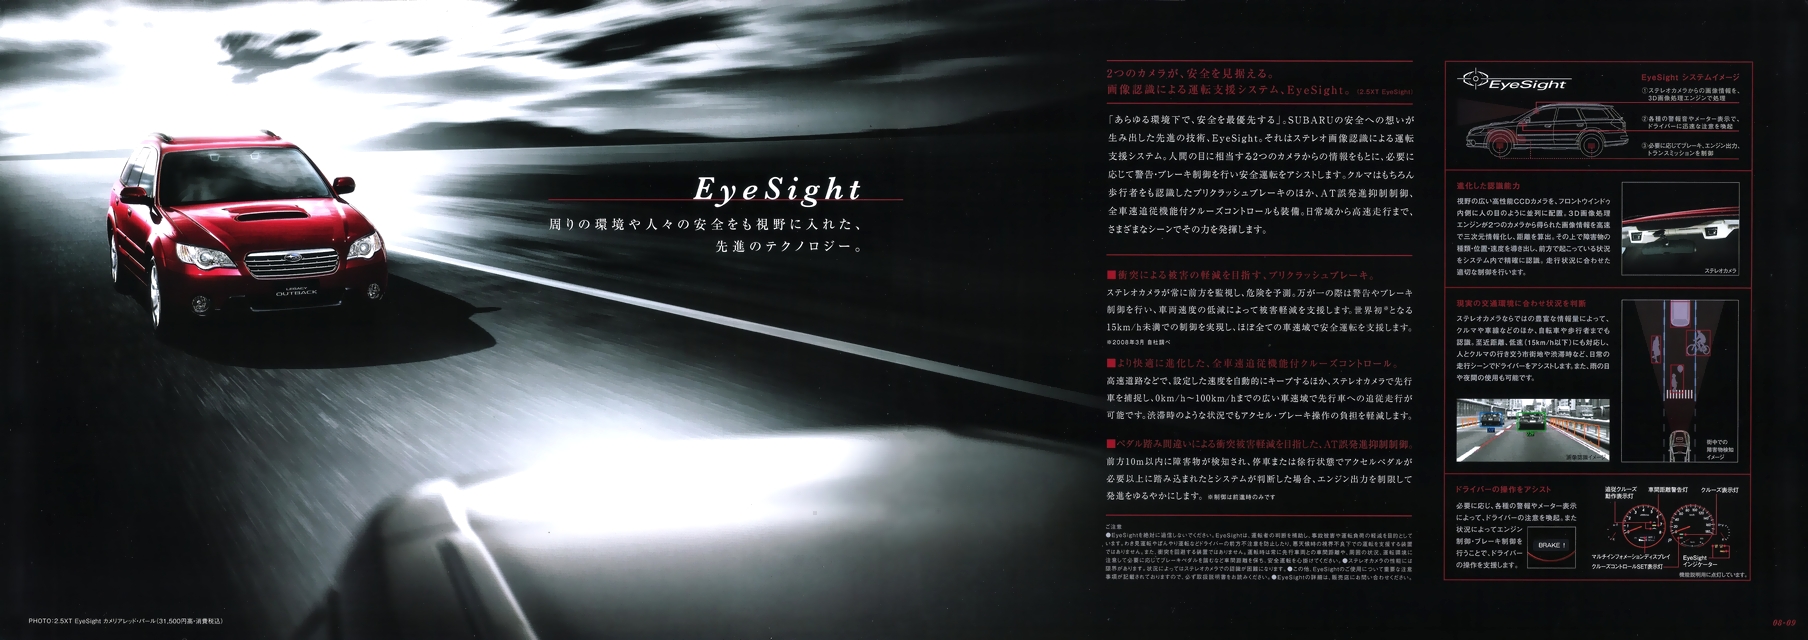 2008N5s KVB AEgobN 2.5XT / 2.5XT EyeSight J^O(6)